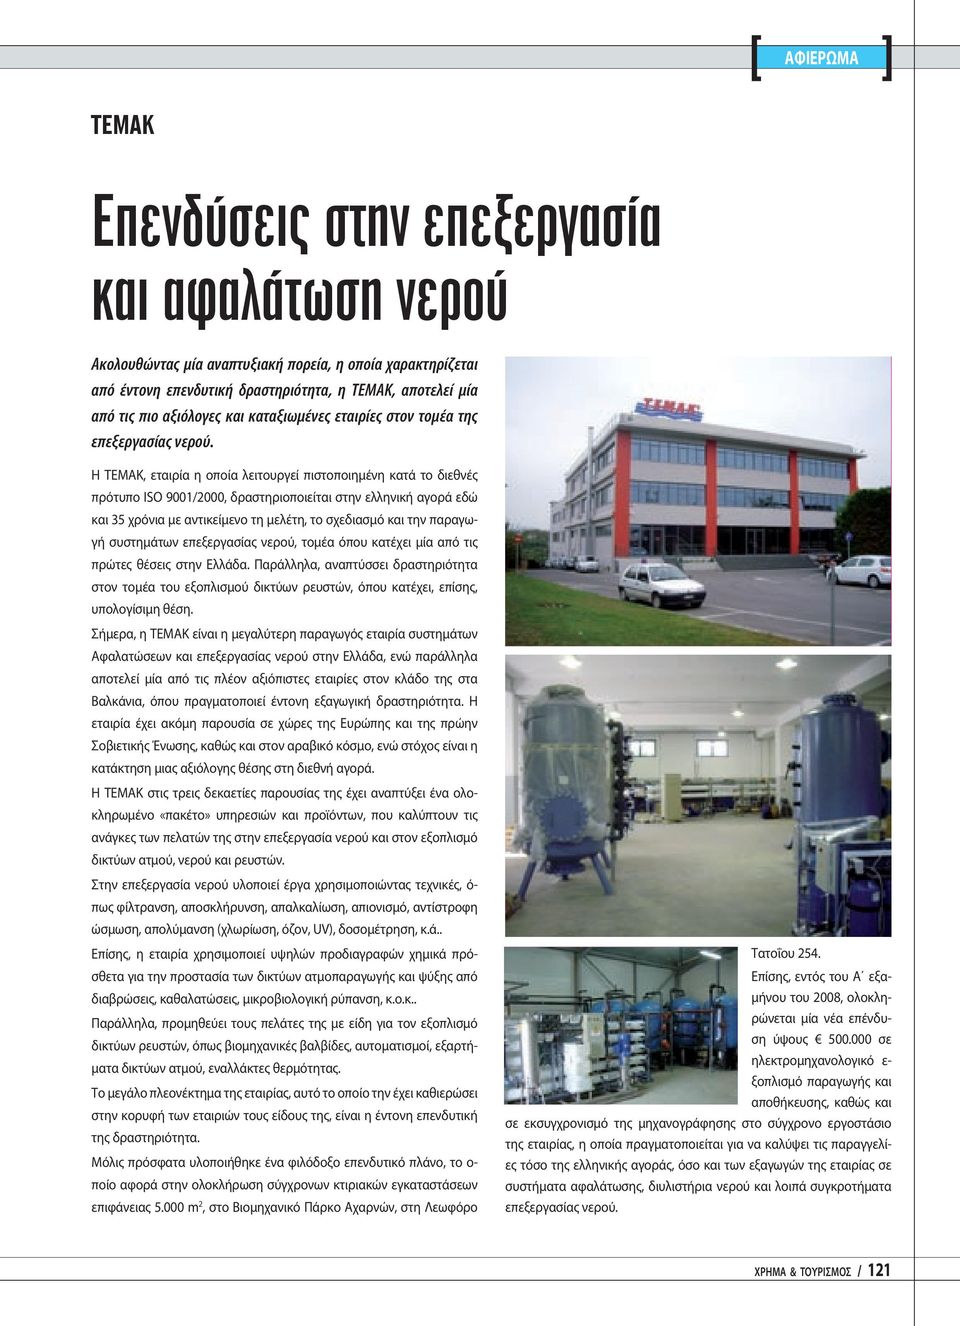 Η ΤΕΜΑΚ, εταιρία η οποία λειτουργεί πιστοποιημένη κατά το διεθνές πρότυπο ISO 9001/2000, δραστηριοποιείται στην ελληνική αγορά εδώ και 35 χρόνια με αντικείμενο τη μελέτη, το σχεδιασμό και την